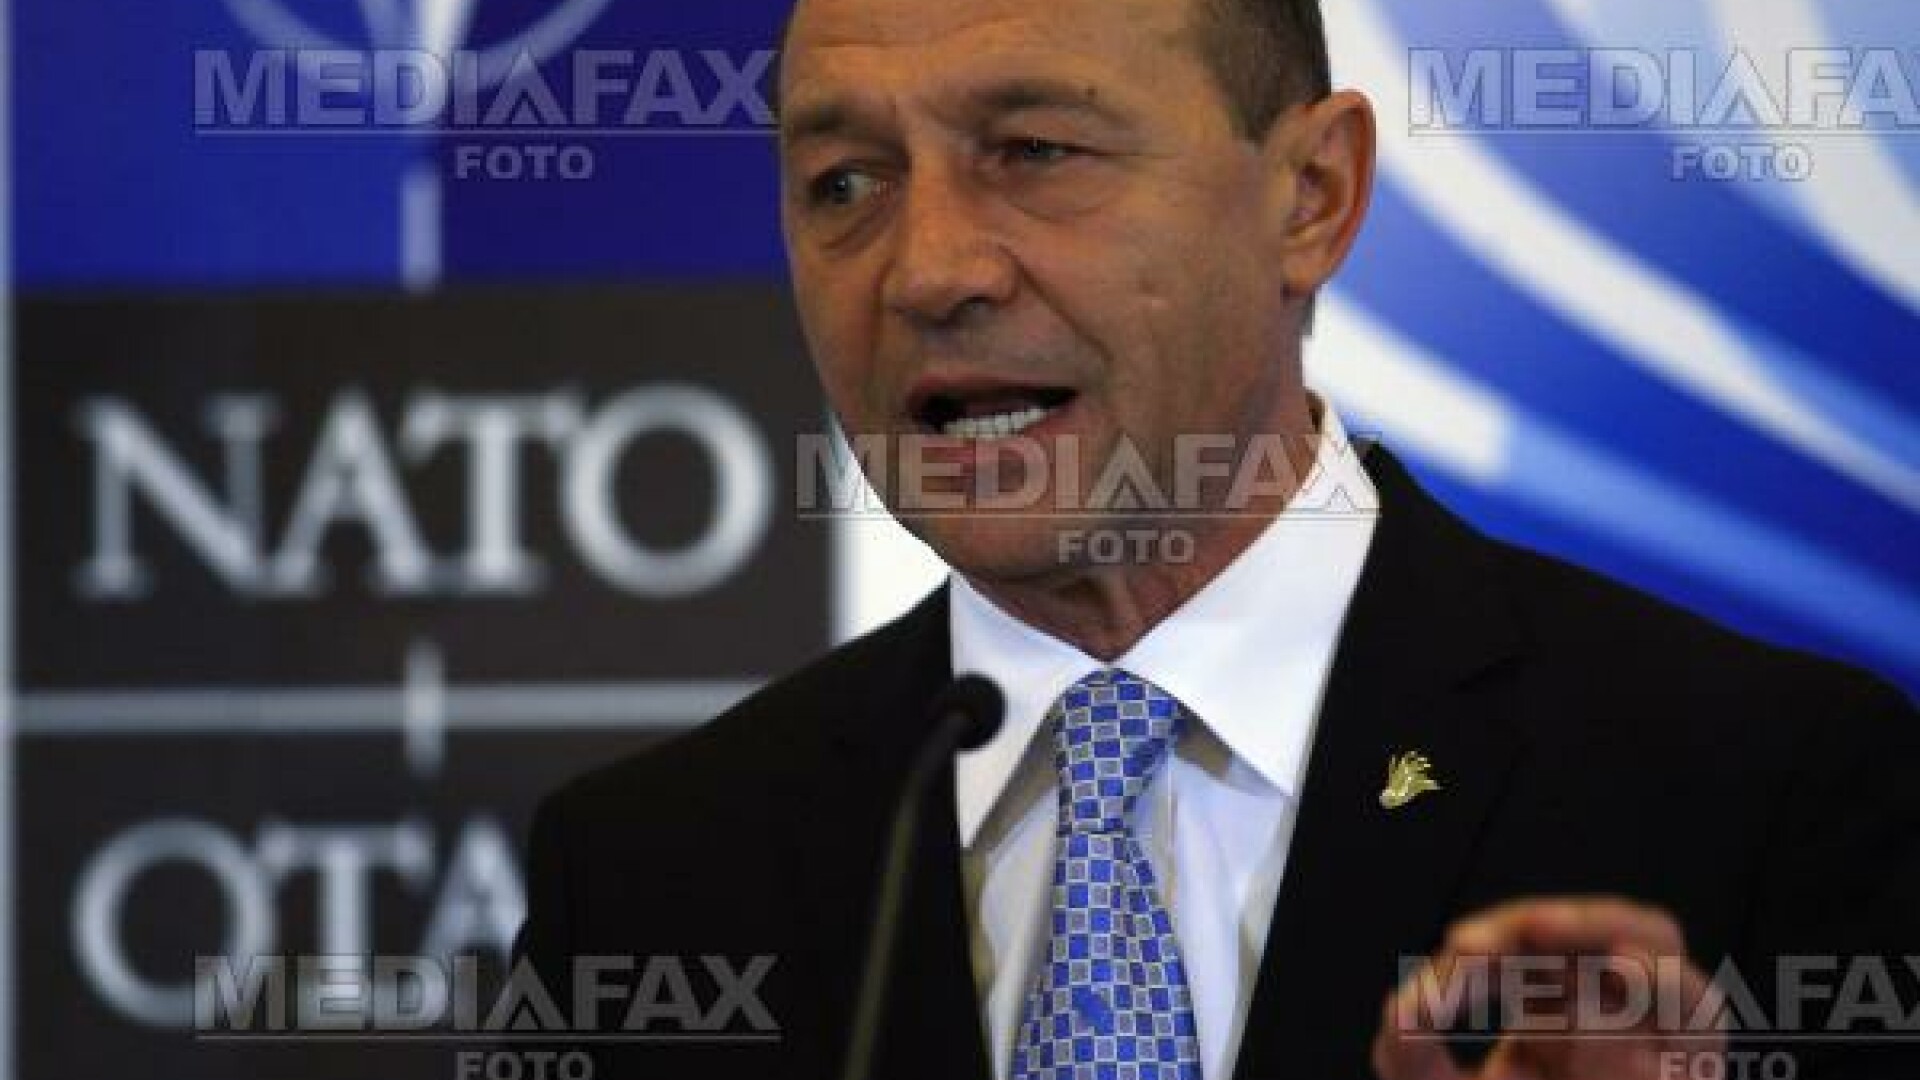 PD-L se gudura la televizor in fata lui Basescu